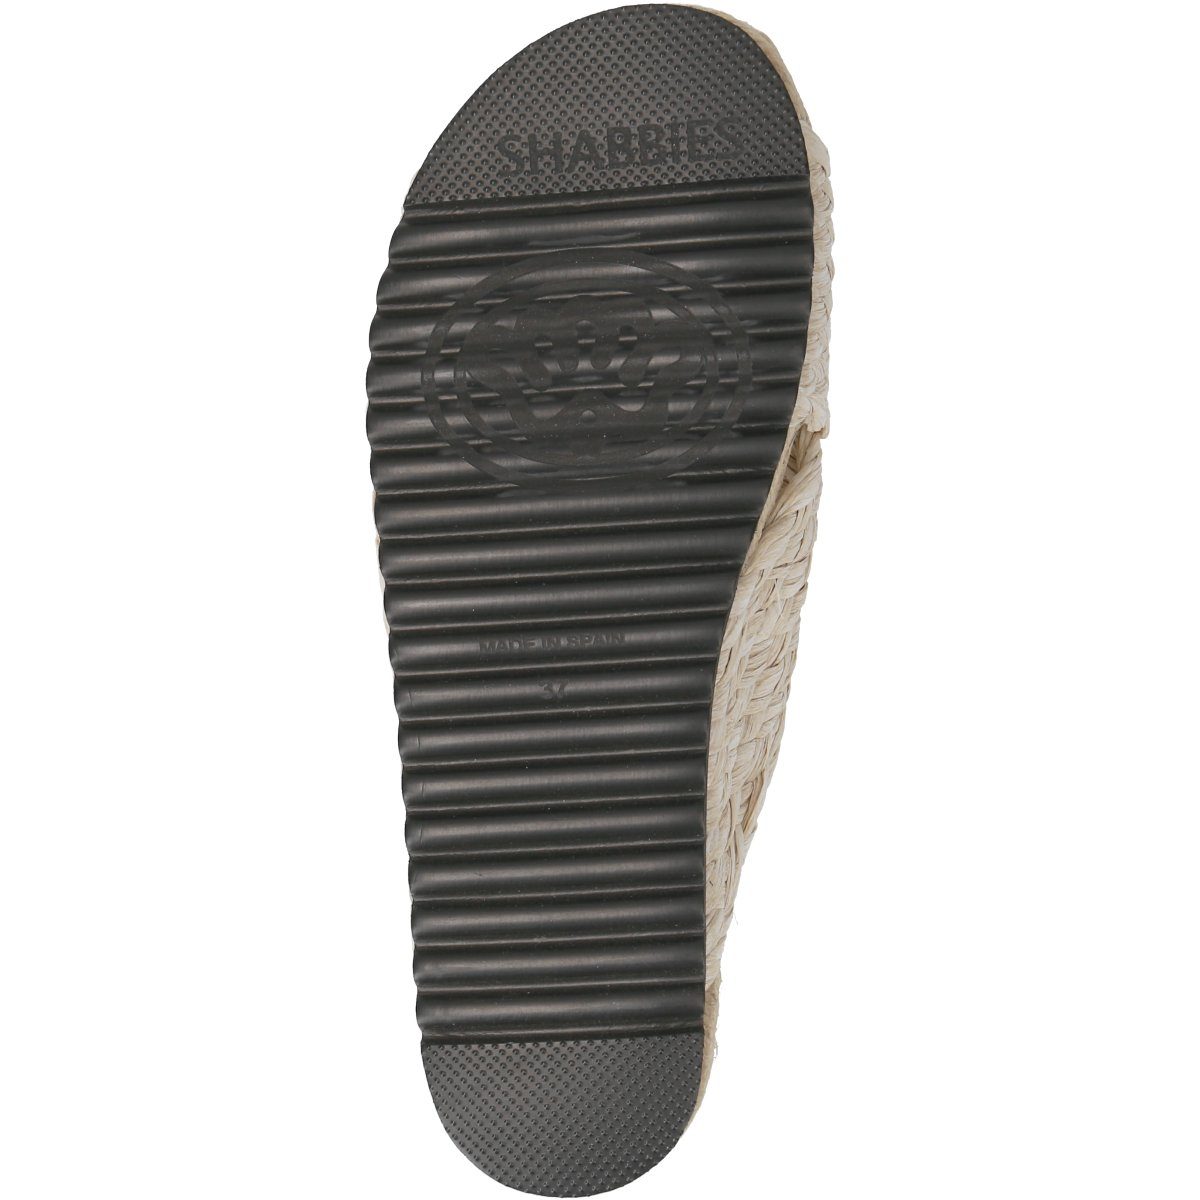 Schuhe Sandalen Shabbies Amsterdam 170020207 Sandale